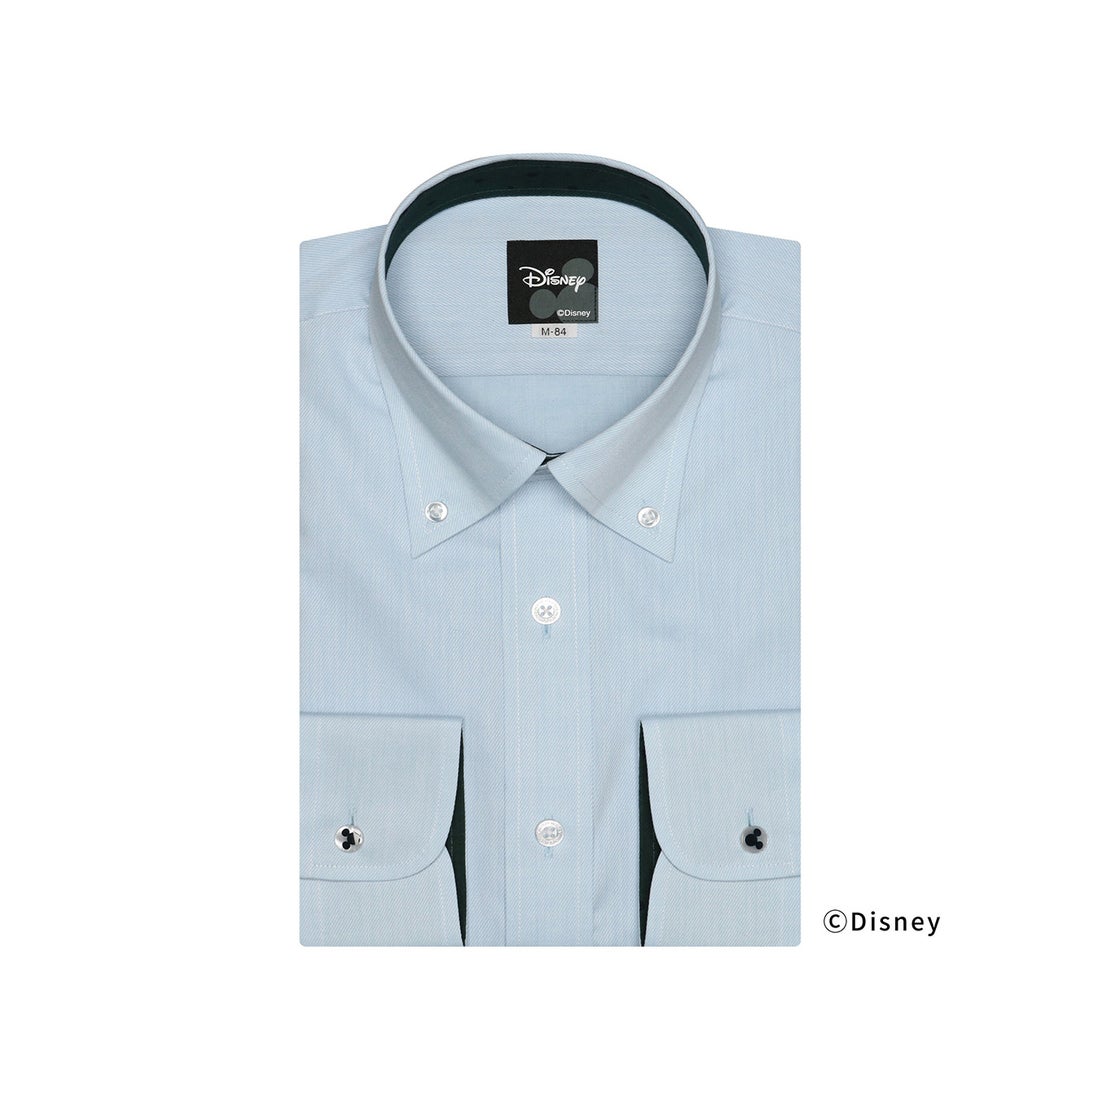 【ブルー】(M)【超形態安定】 ボタンダウンカラー 長袖 ワイシャツ